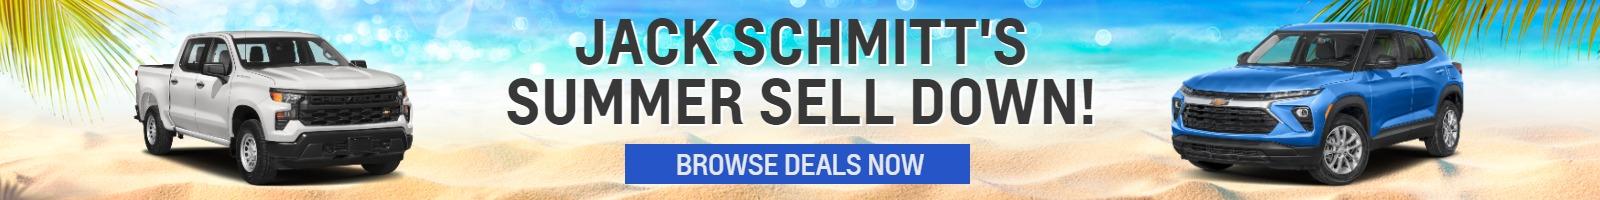 Jack Schmitt's SUMMER Sell Down!